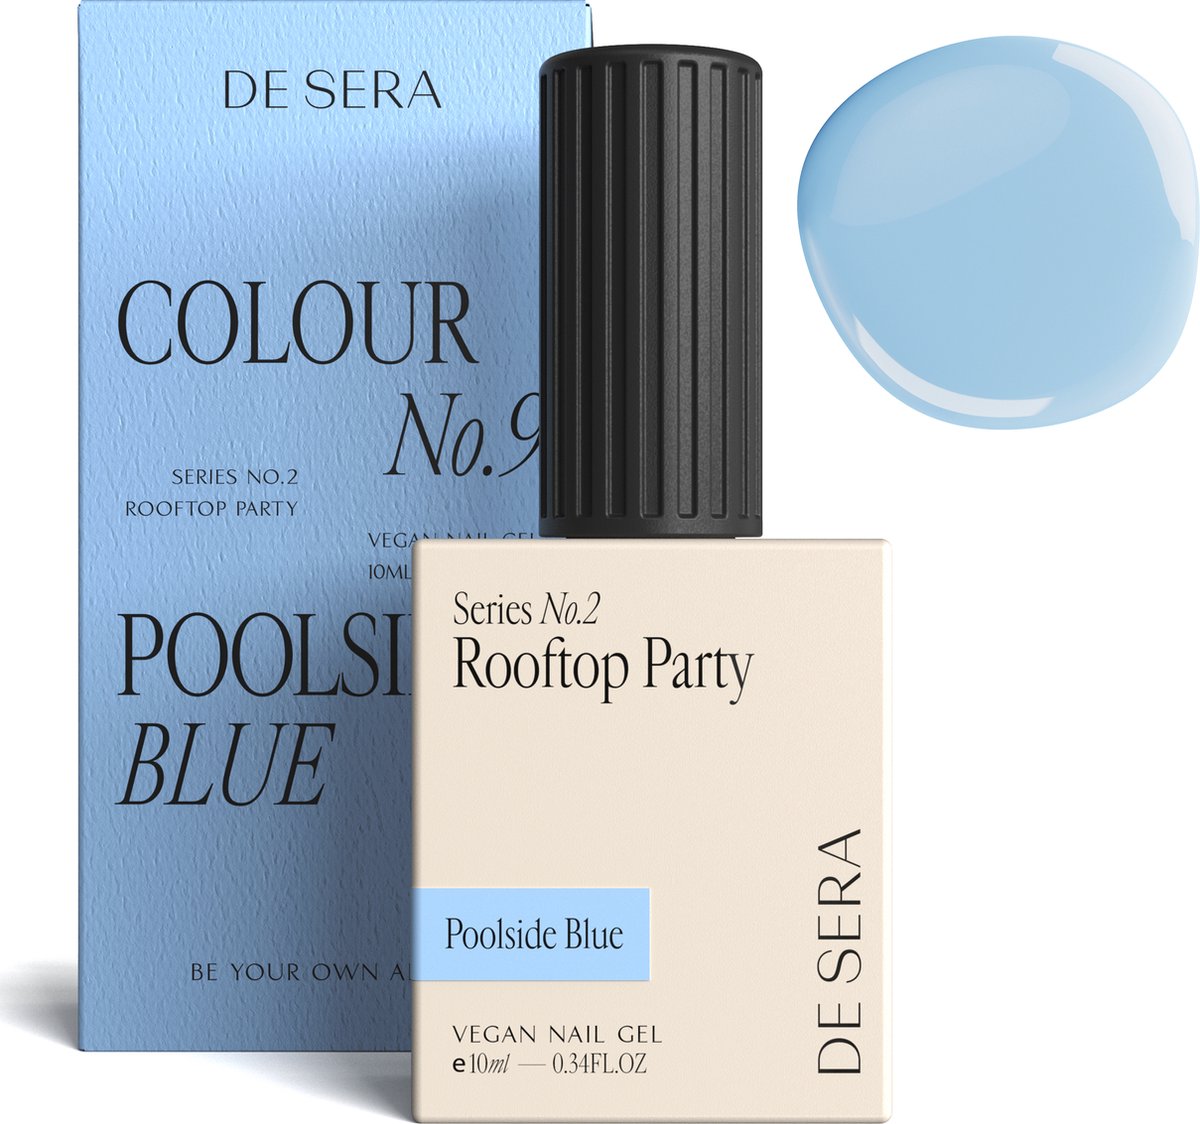 De Sera Gellak - Pastel Blauwe Gel Nagellak - Blauw - 10ML - Colour No. 9 Poolside Blue